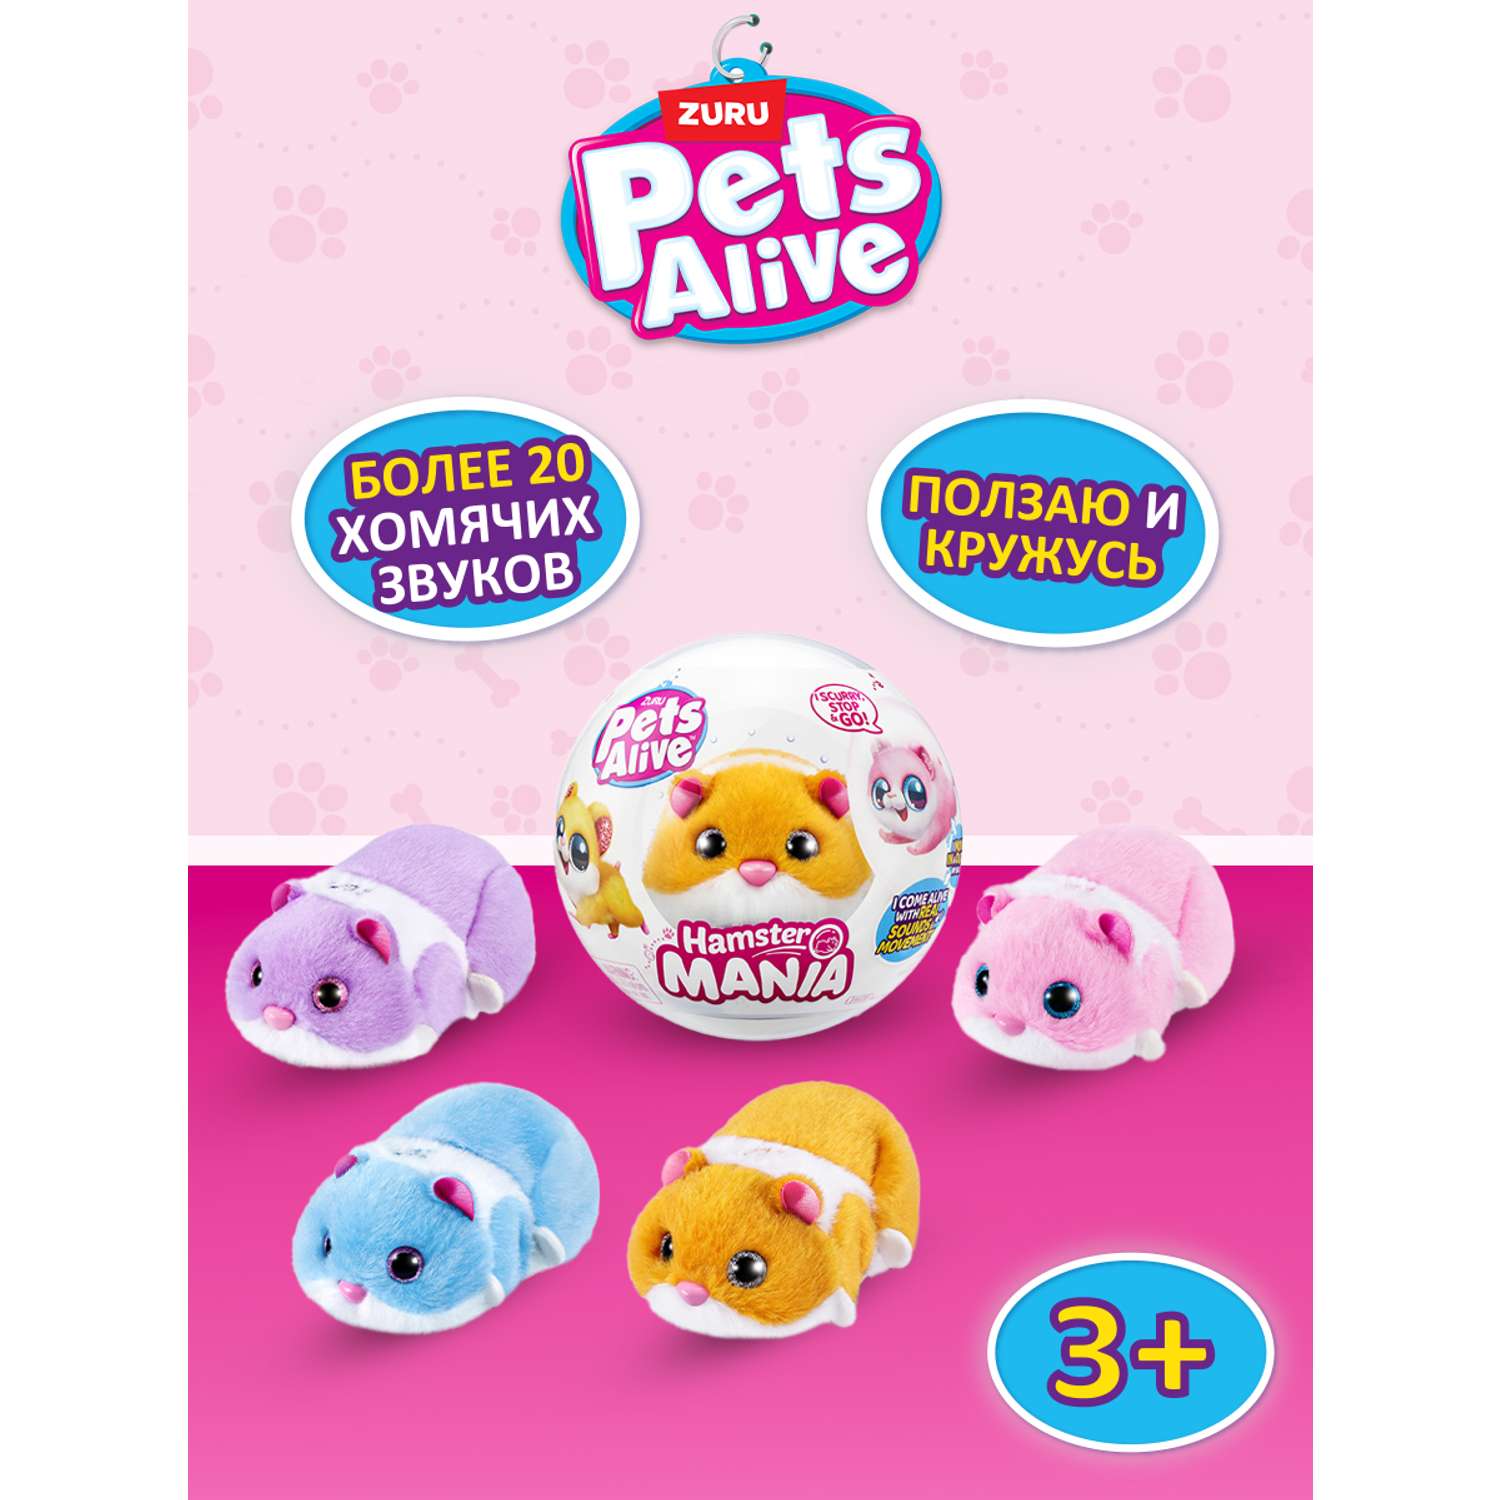 Игрушка Pets Alive Hamstermania Шар в непрозрачной упаковке (Сюрприз) 9543 - фото 1